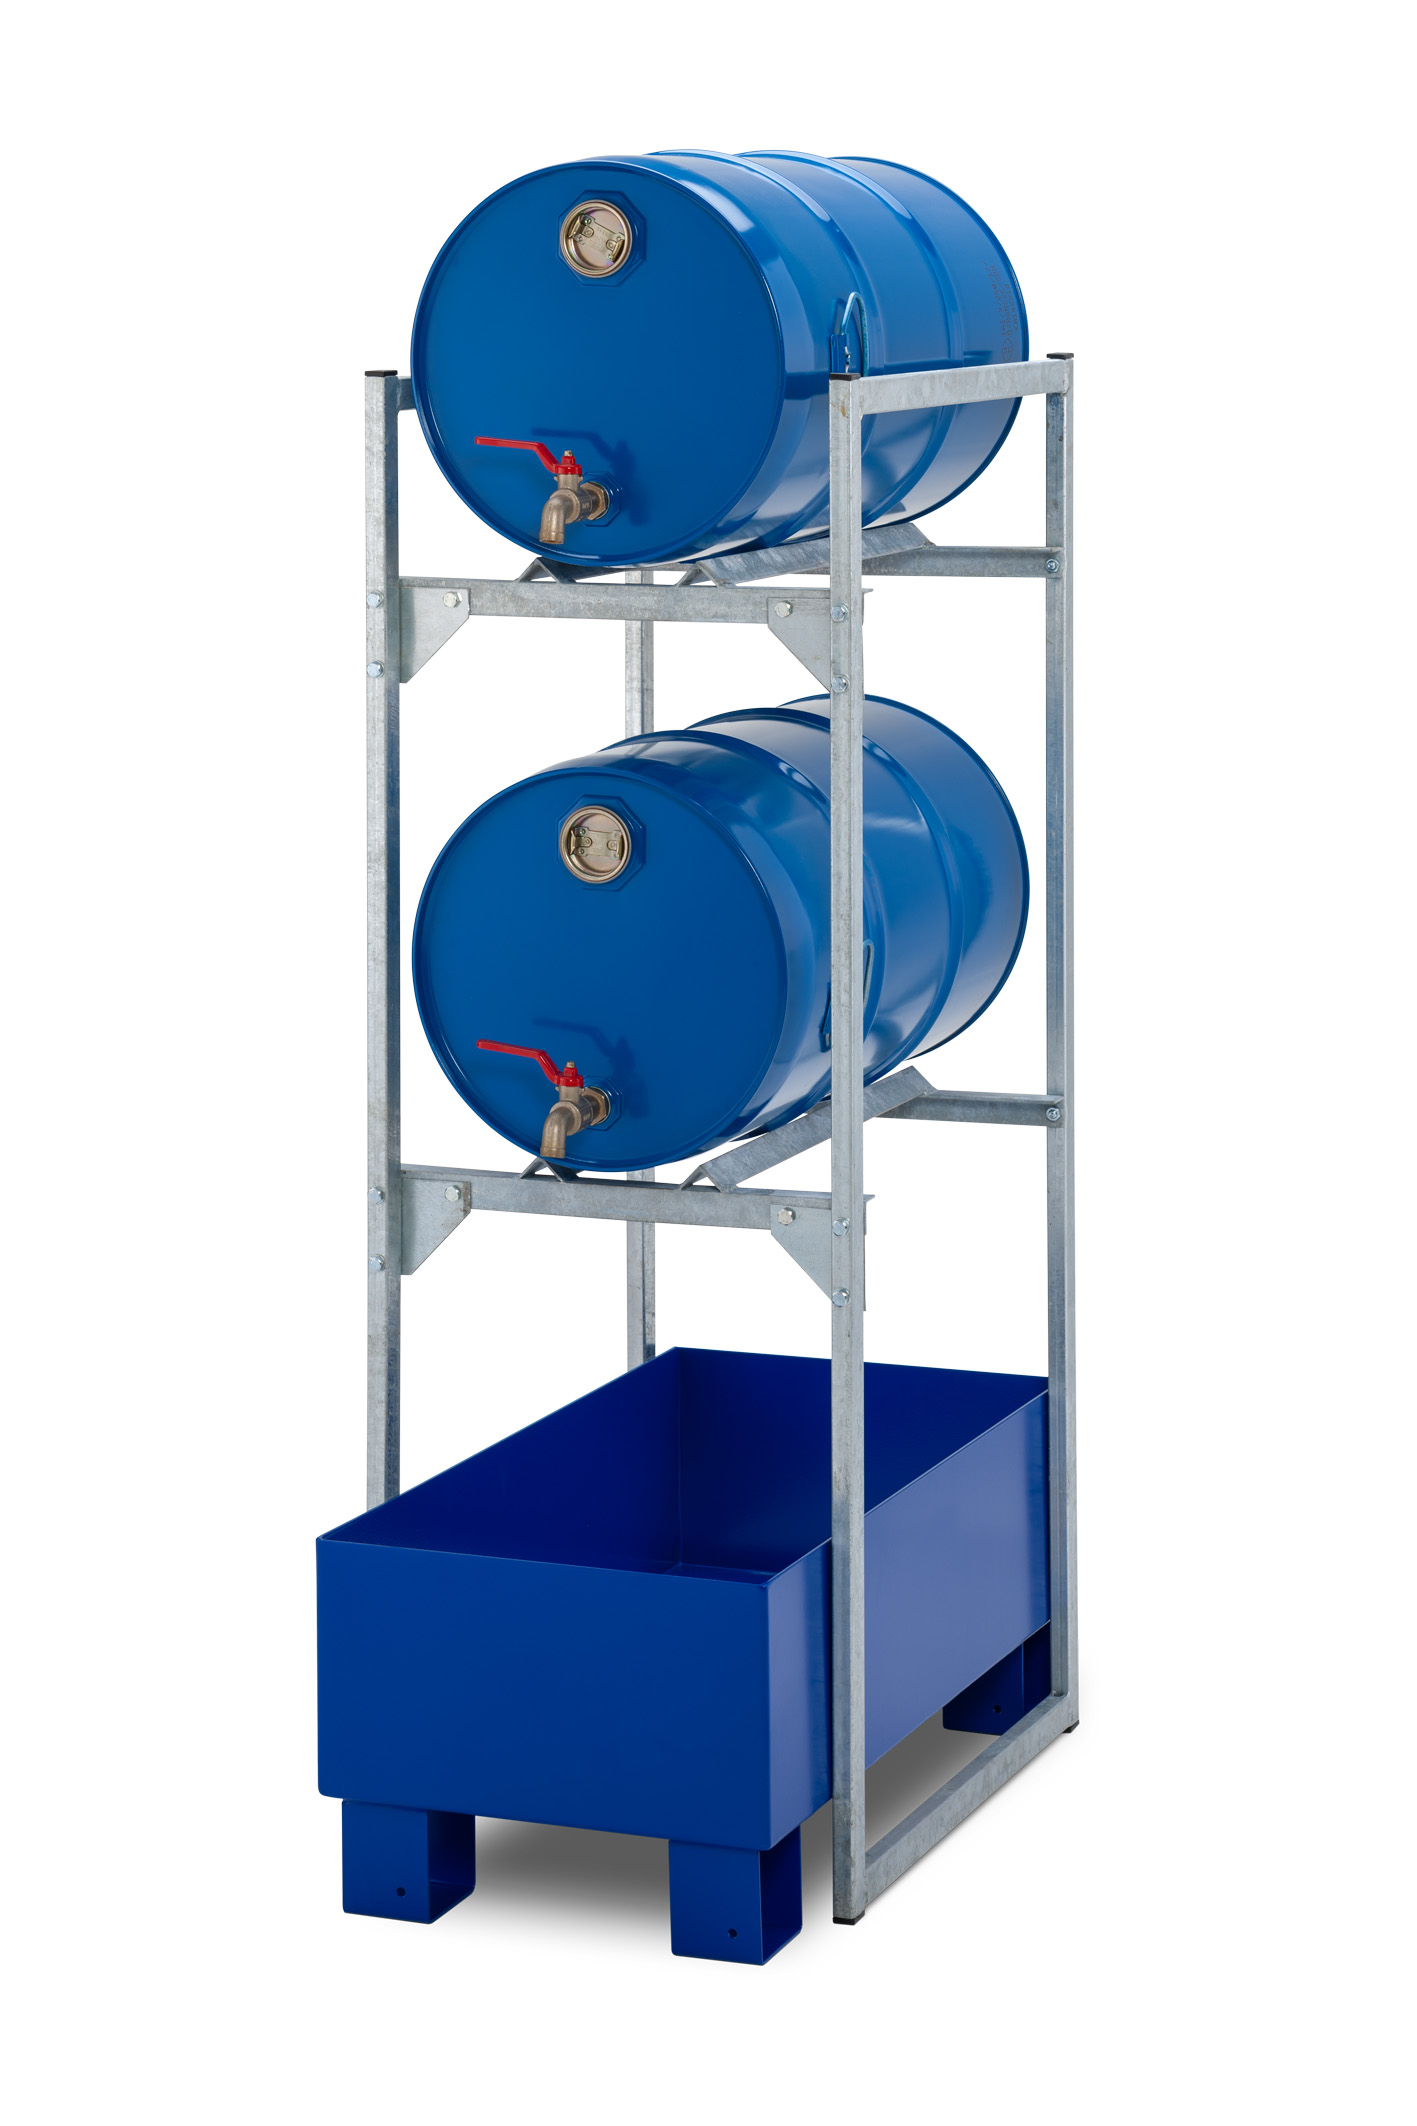 Beispiel für 2x 60-Liter-Fässer: Cemo Fassregal Ty 120 mit Stahlauffangwanne und Fassauflagen